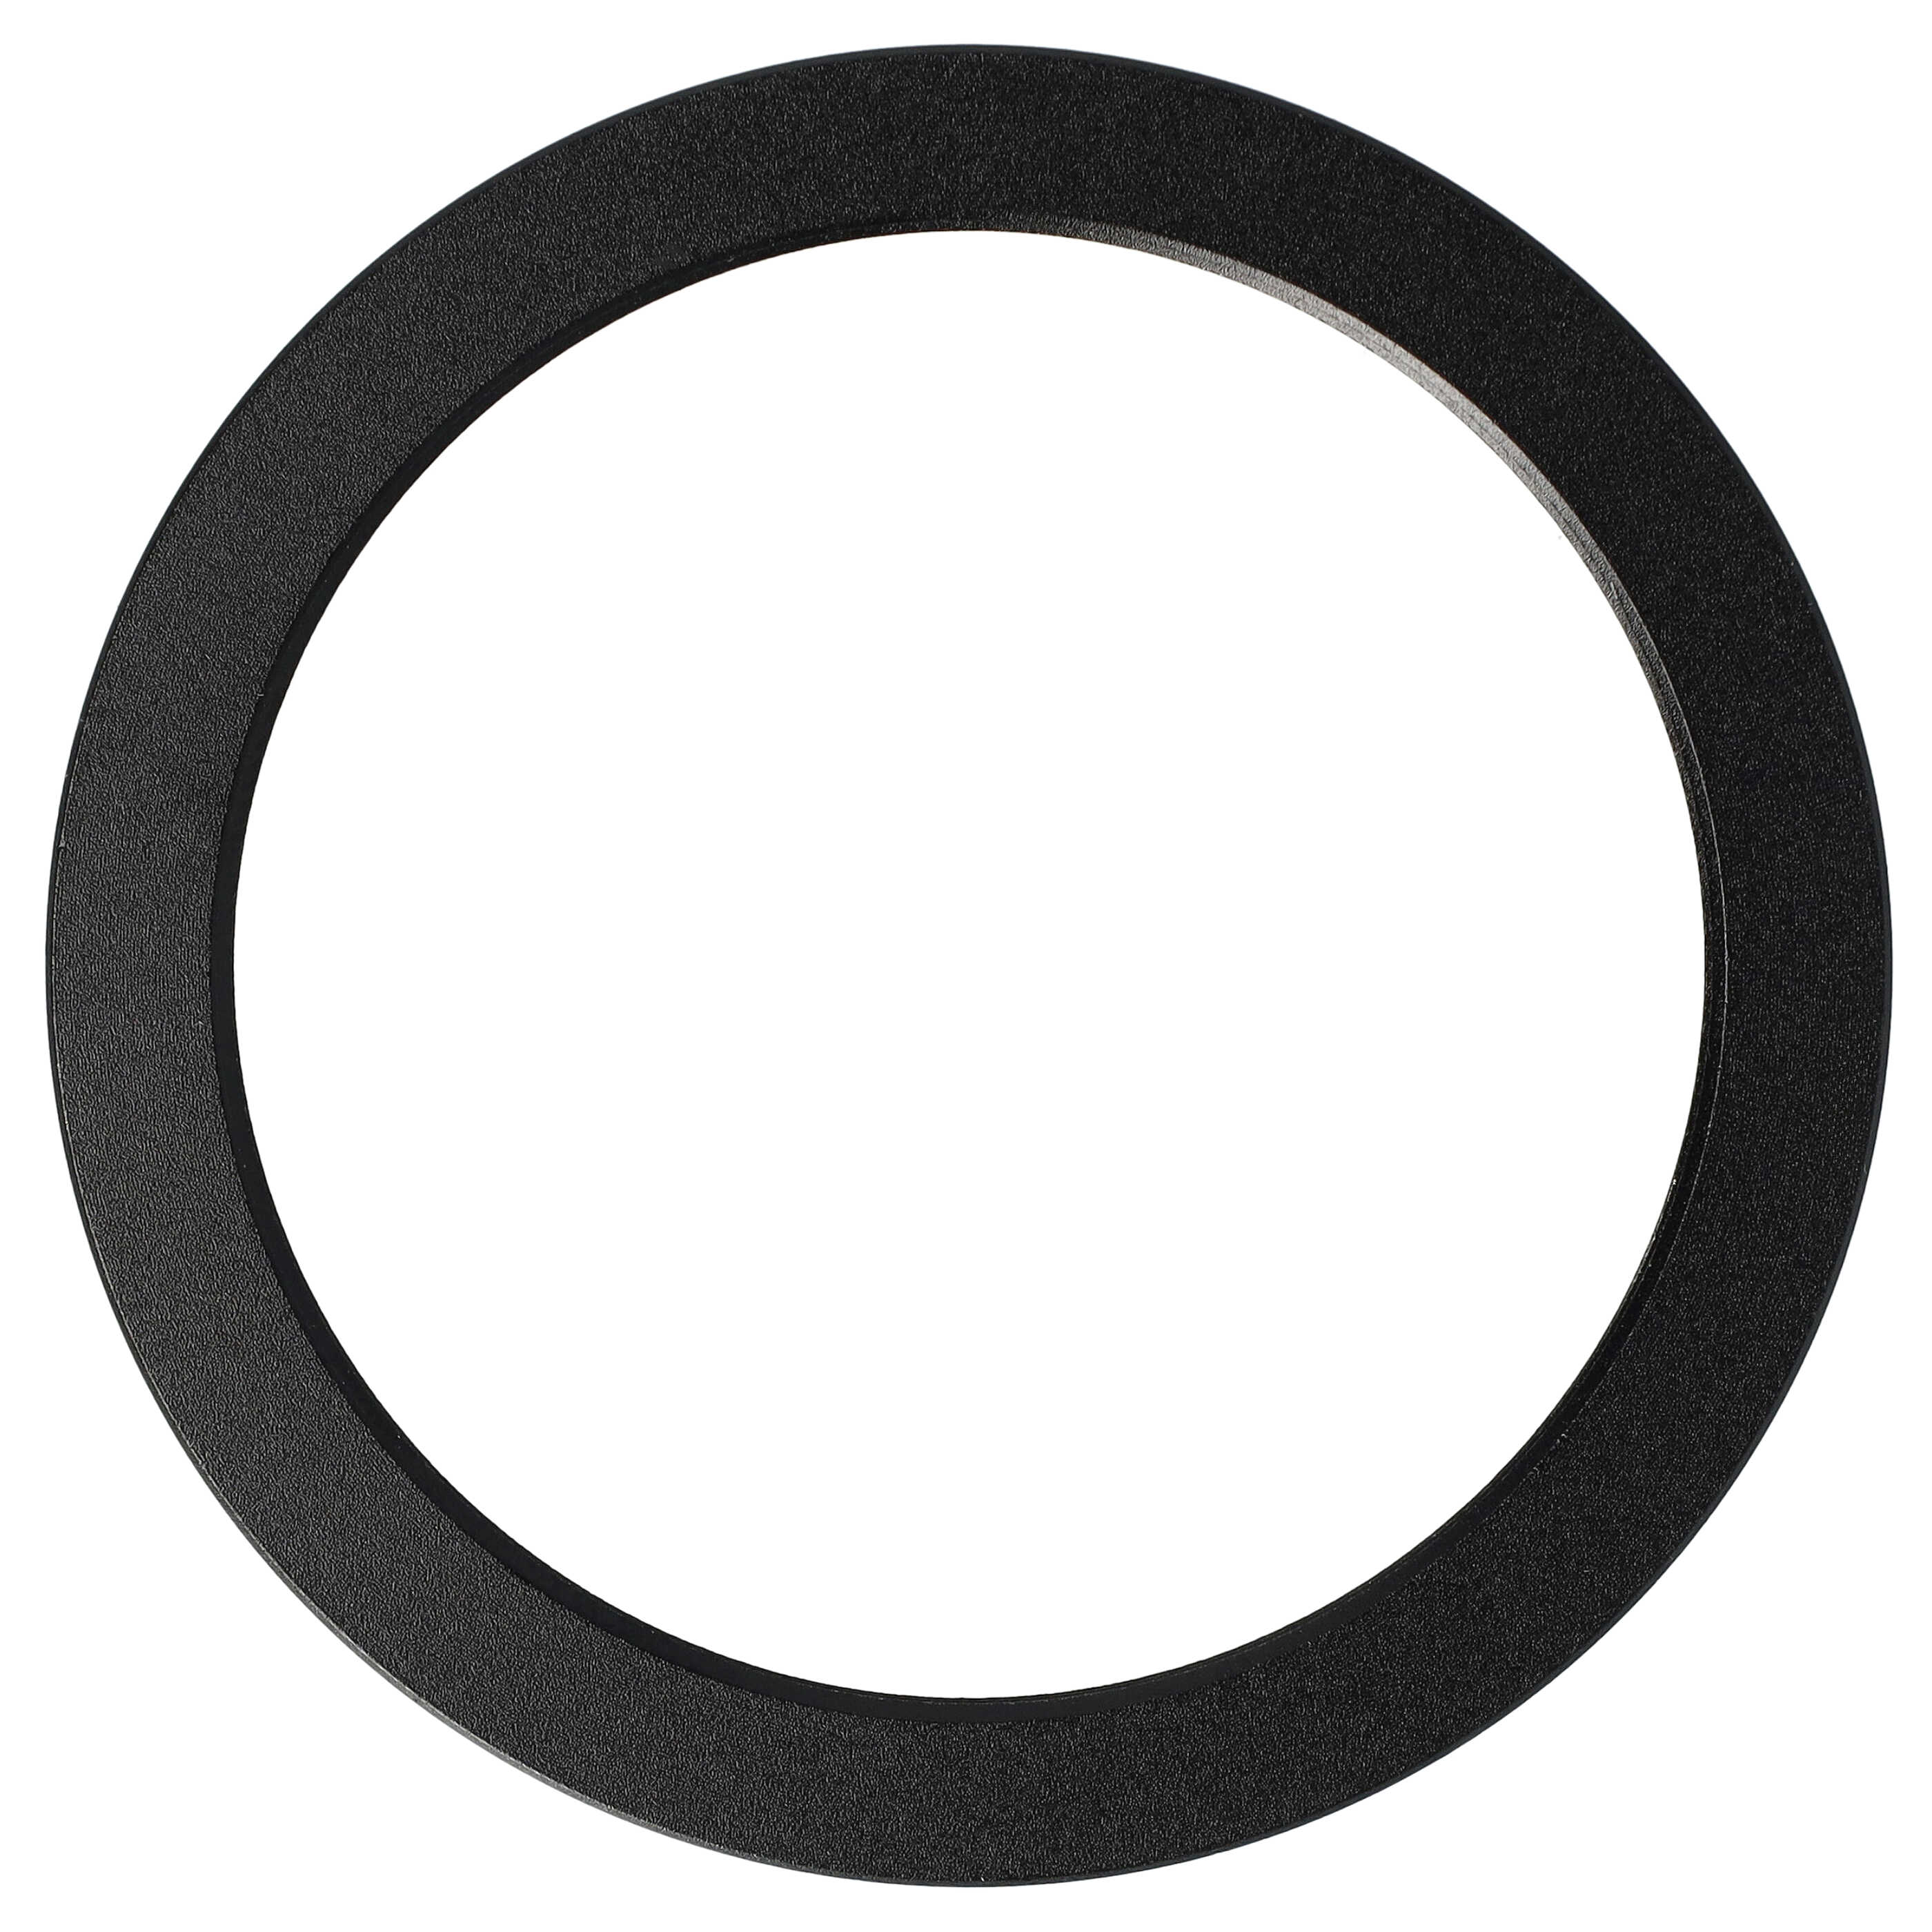 Step-Down-Ring Adapter von 62 mm auf 52 mm passend für Kamera Objektiv - Filteradapter, Metall, schwarz